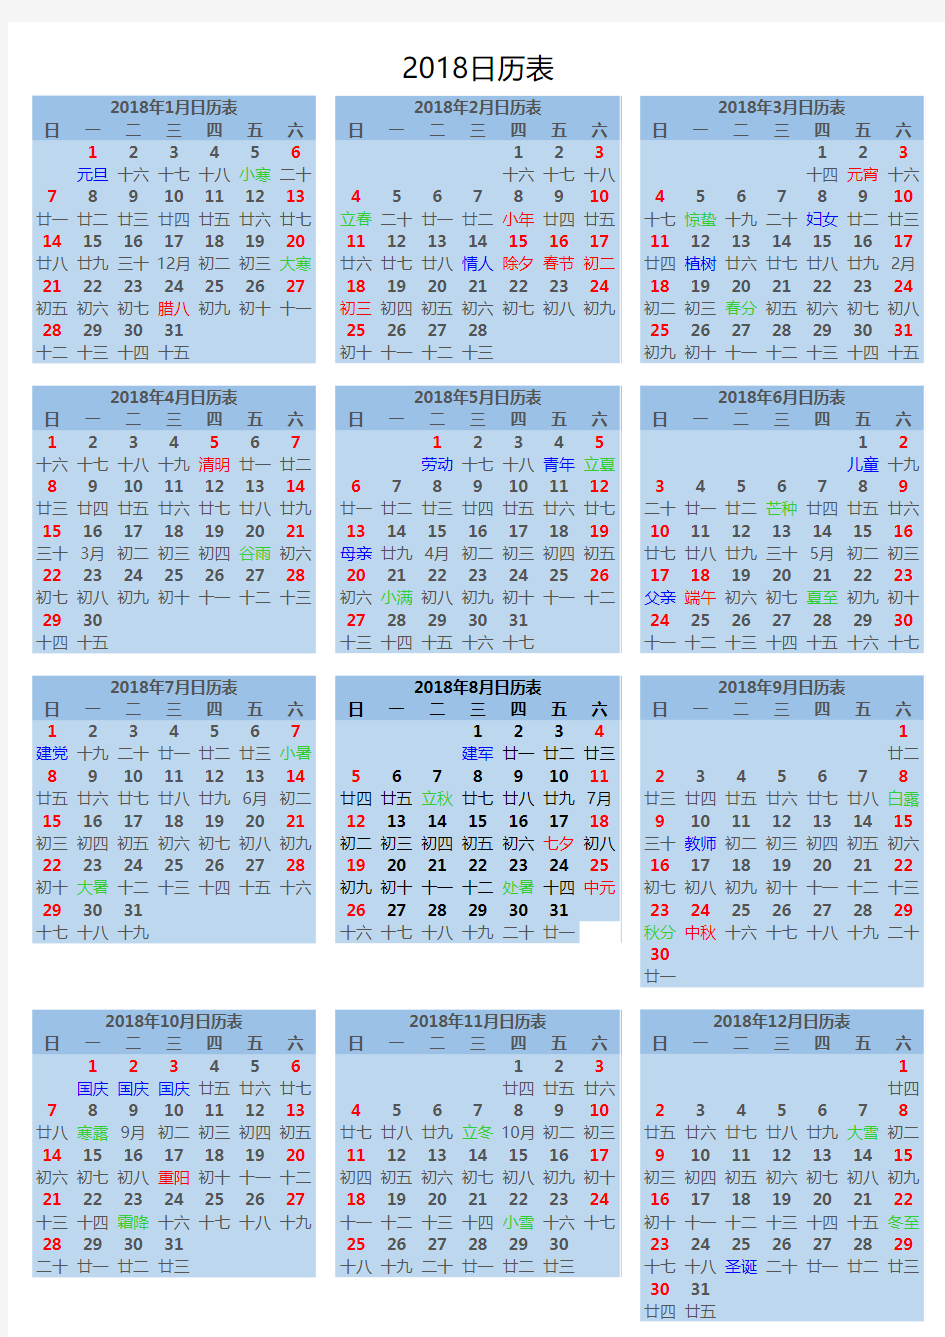 2018年日历表格打印版